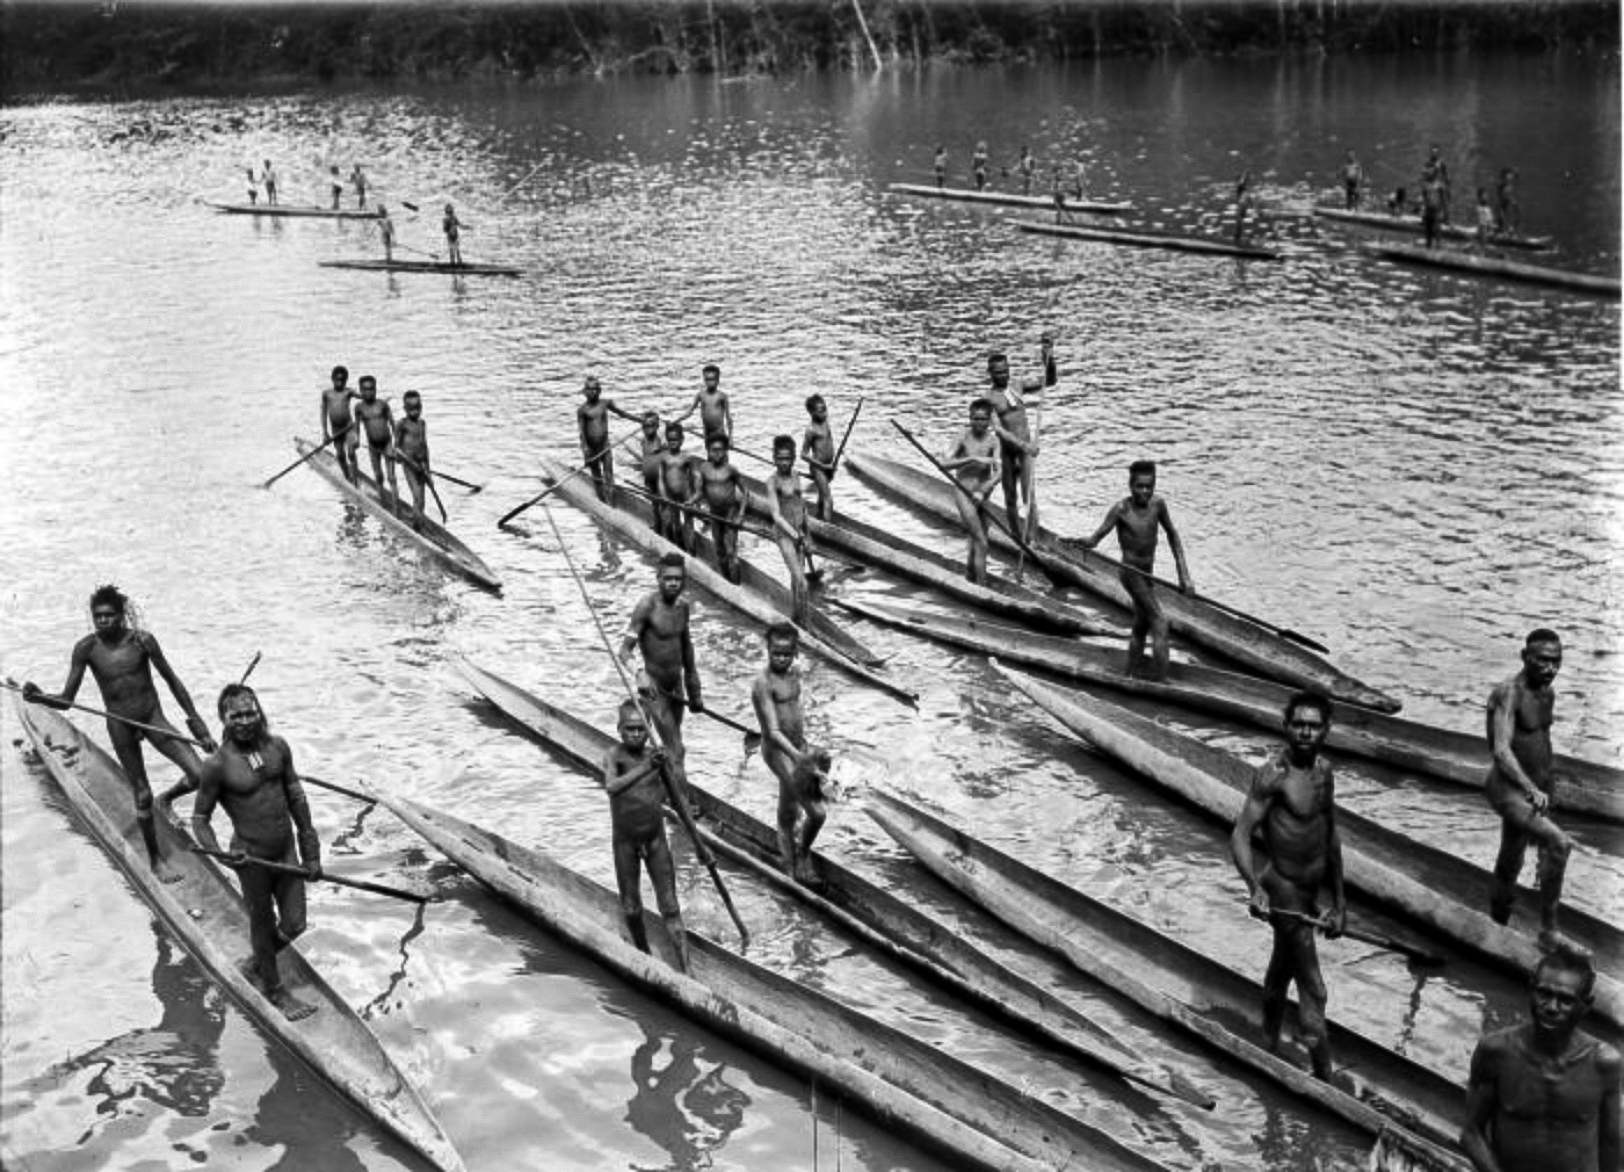 लोरेंत्ज़ नदी पर अस्मत, 1912-13 में तीसरे दक्षिण न्यू गिनी अभियान के दौरान फोटो खिंचवाए।